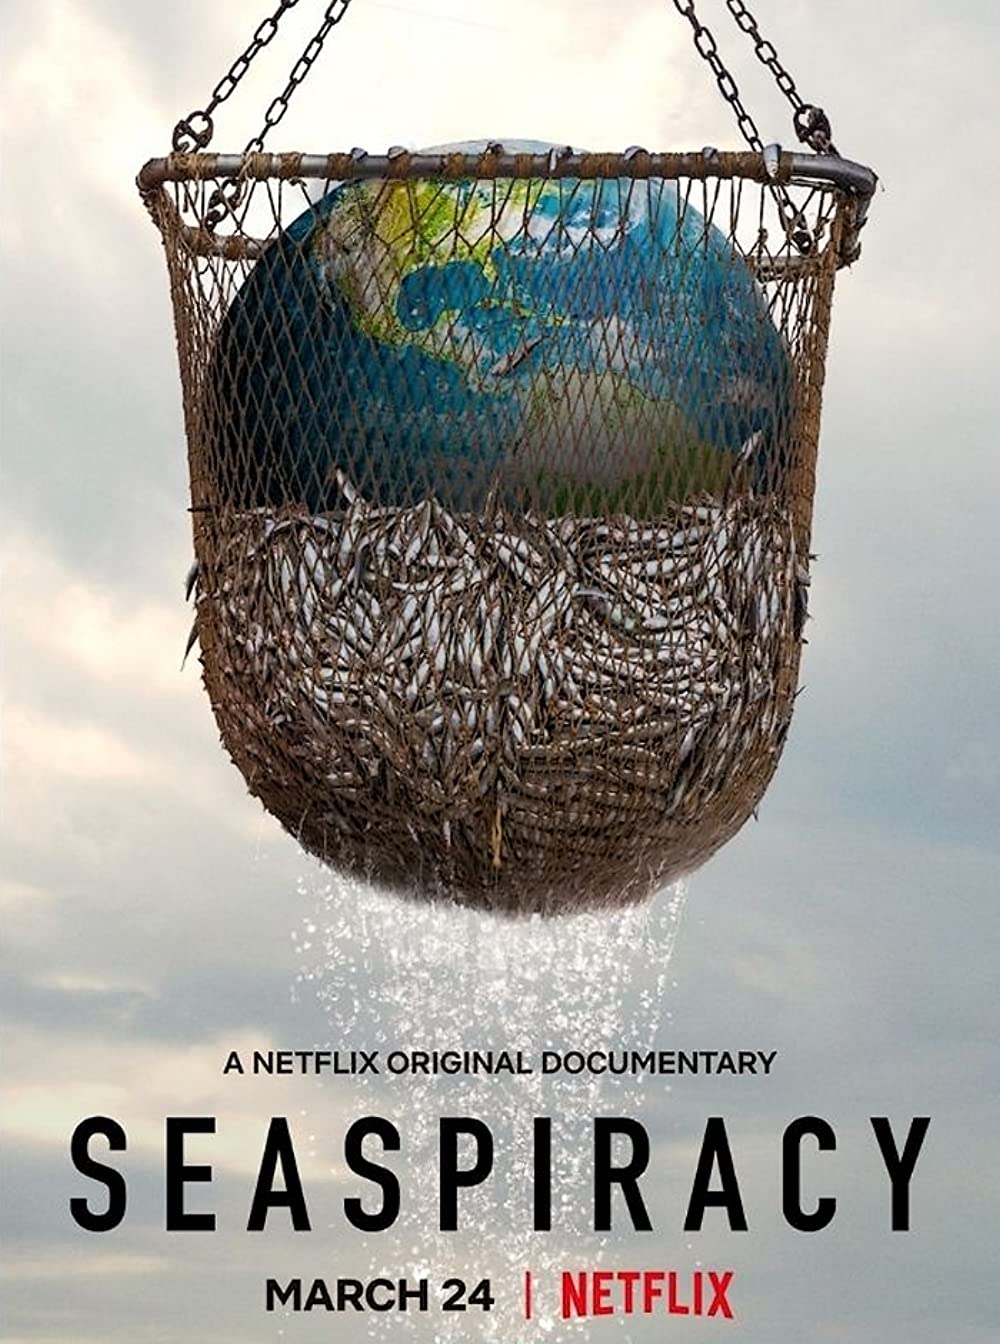 ดูหนังออนไลน์ ดูหนังใหม่ Netflix SEASPIRACY 2021 ใครทำร้ายทะเล moviehdfree